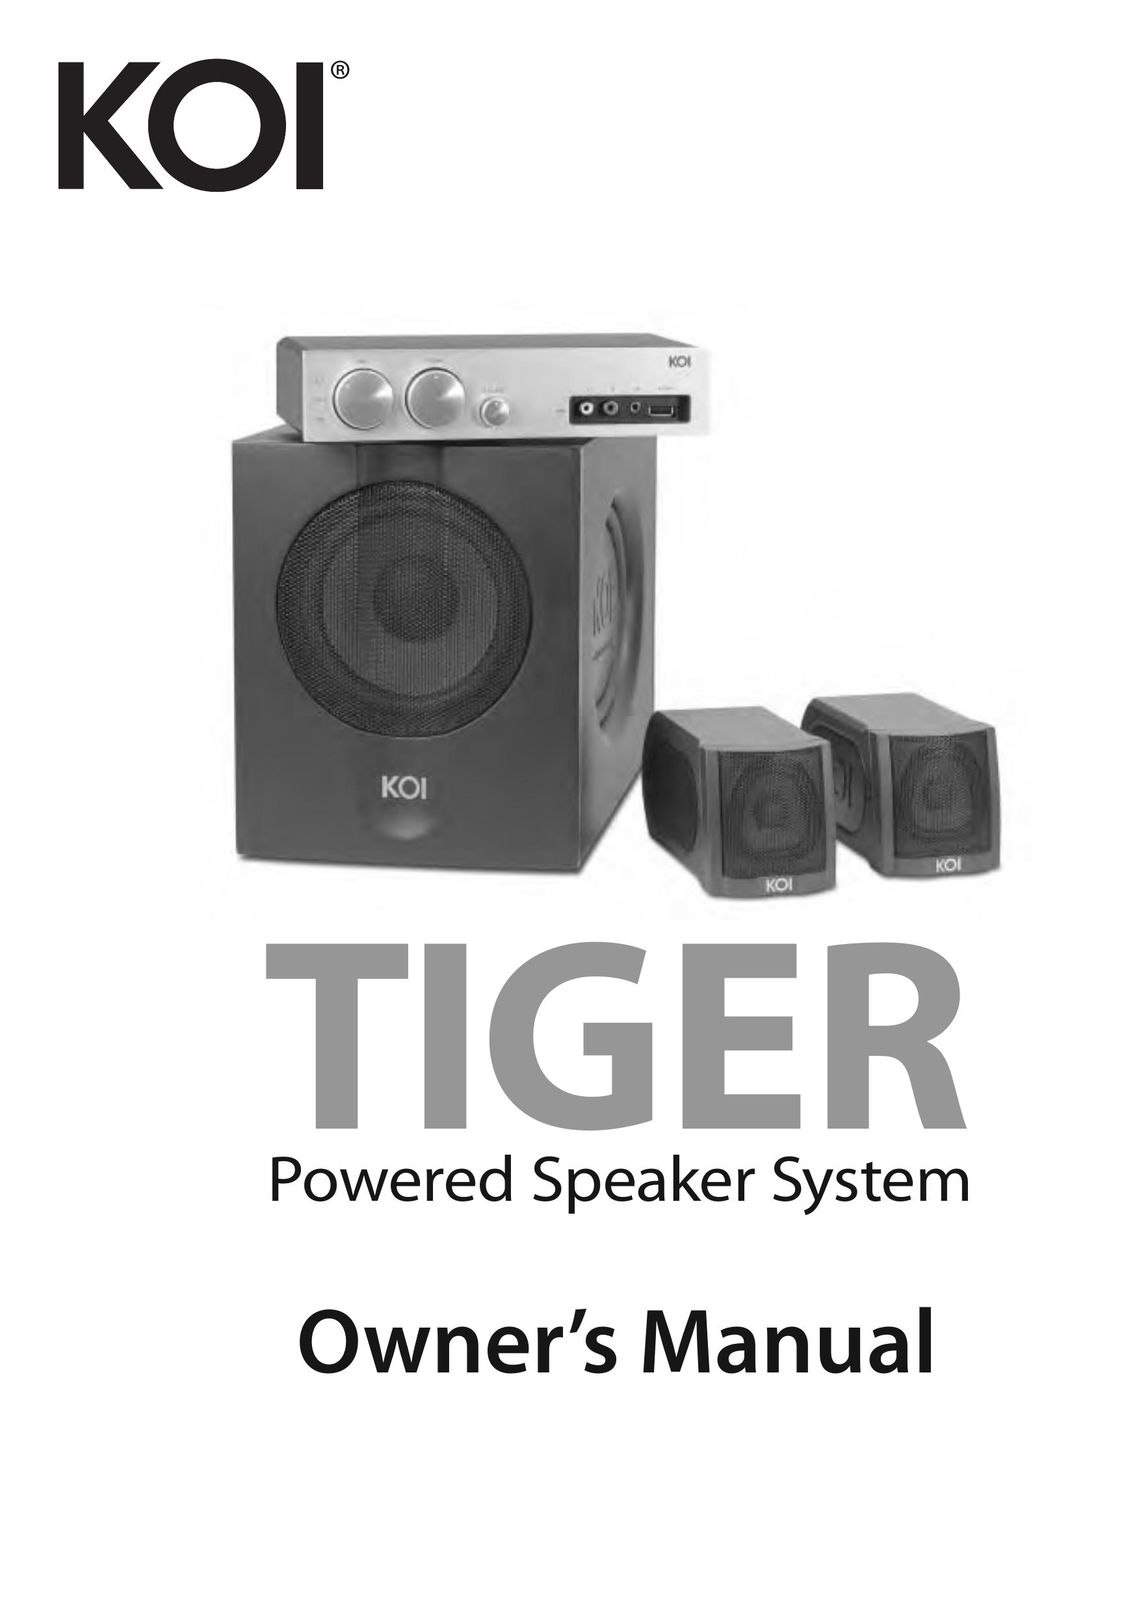 KOI TIGER Powered Speaker System Speaker System User Manual